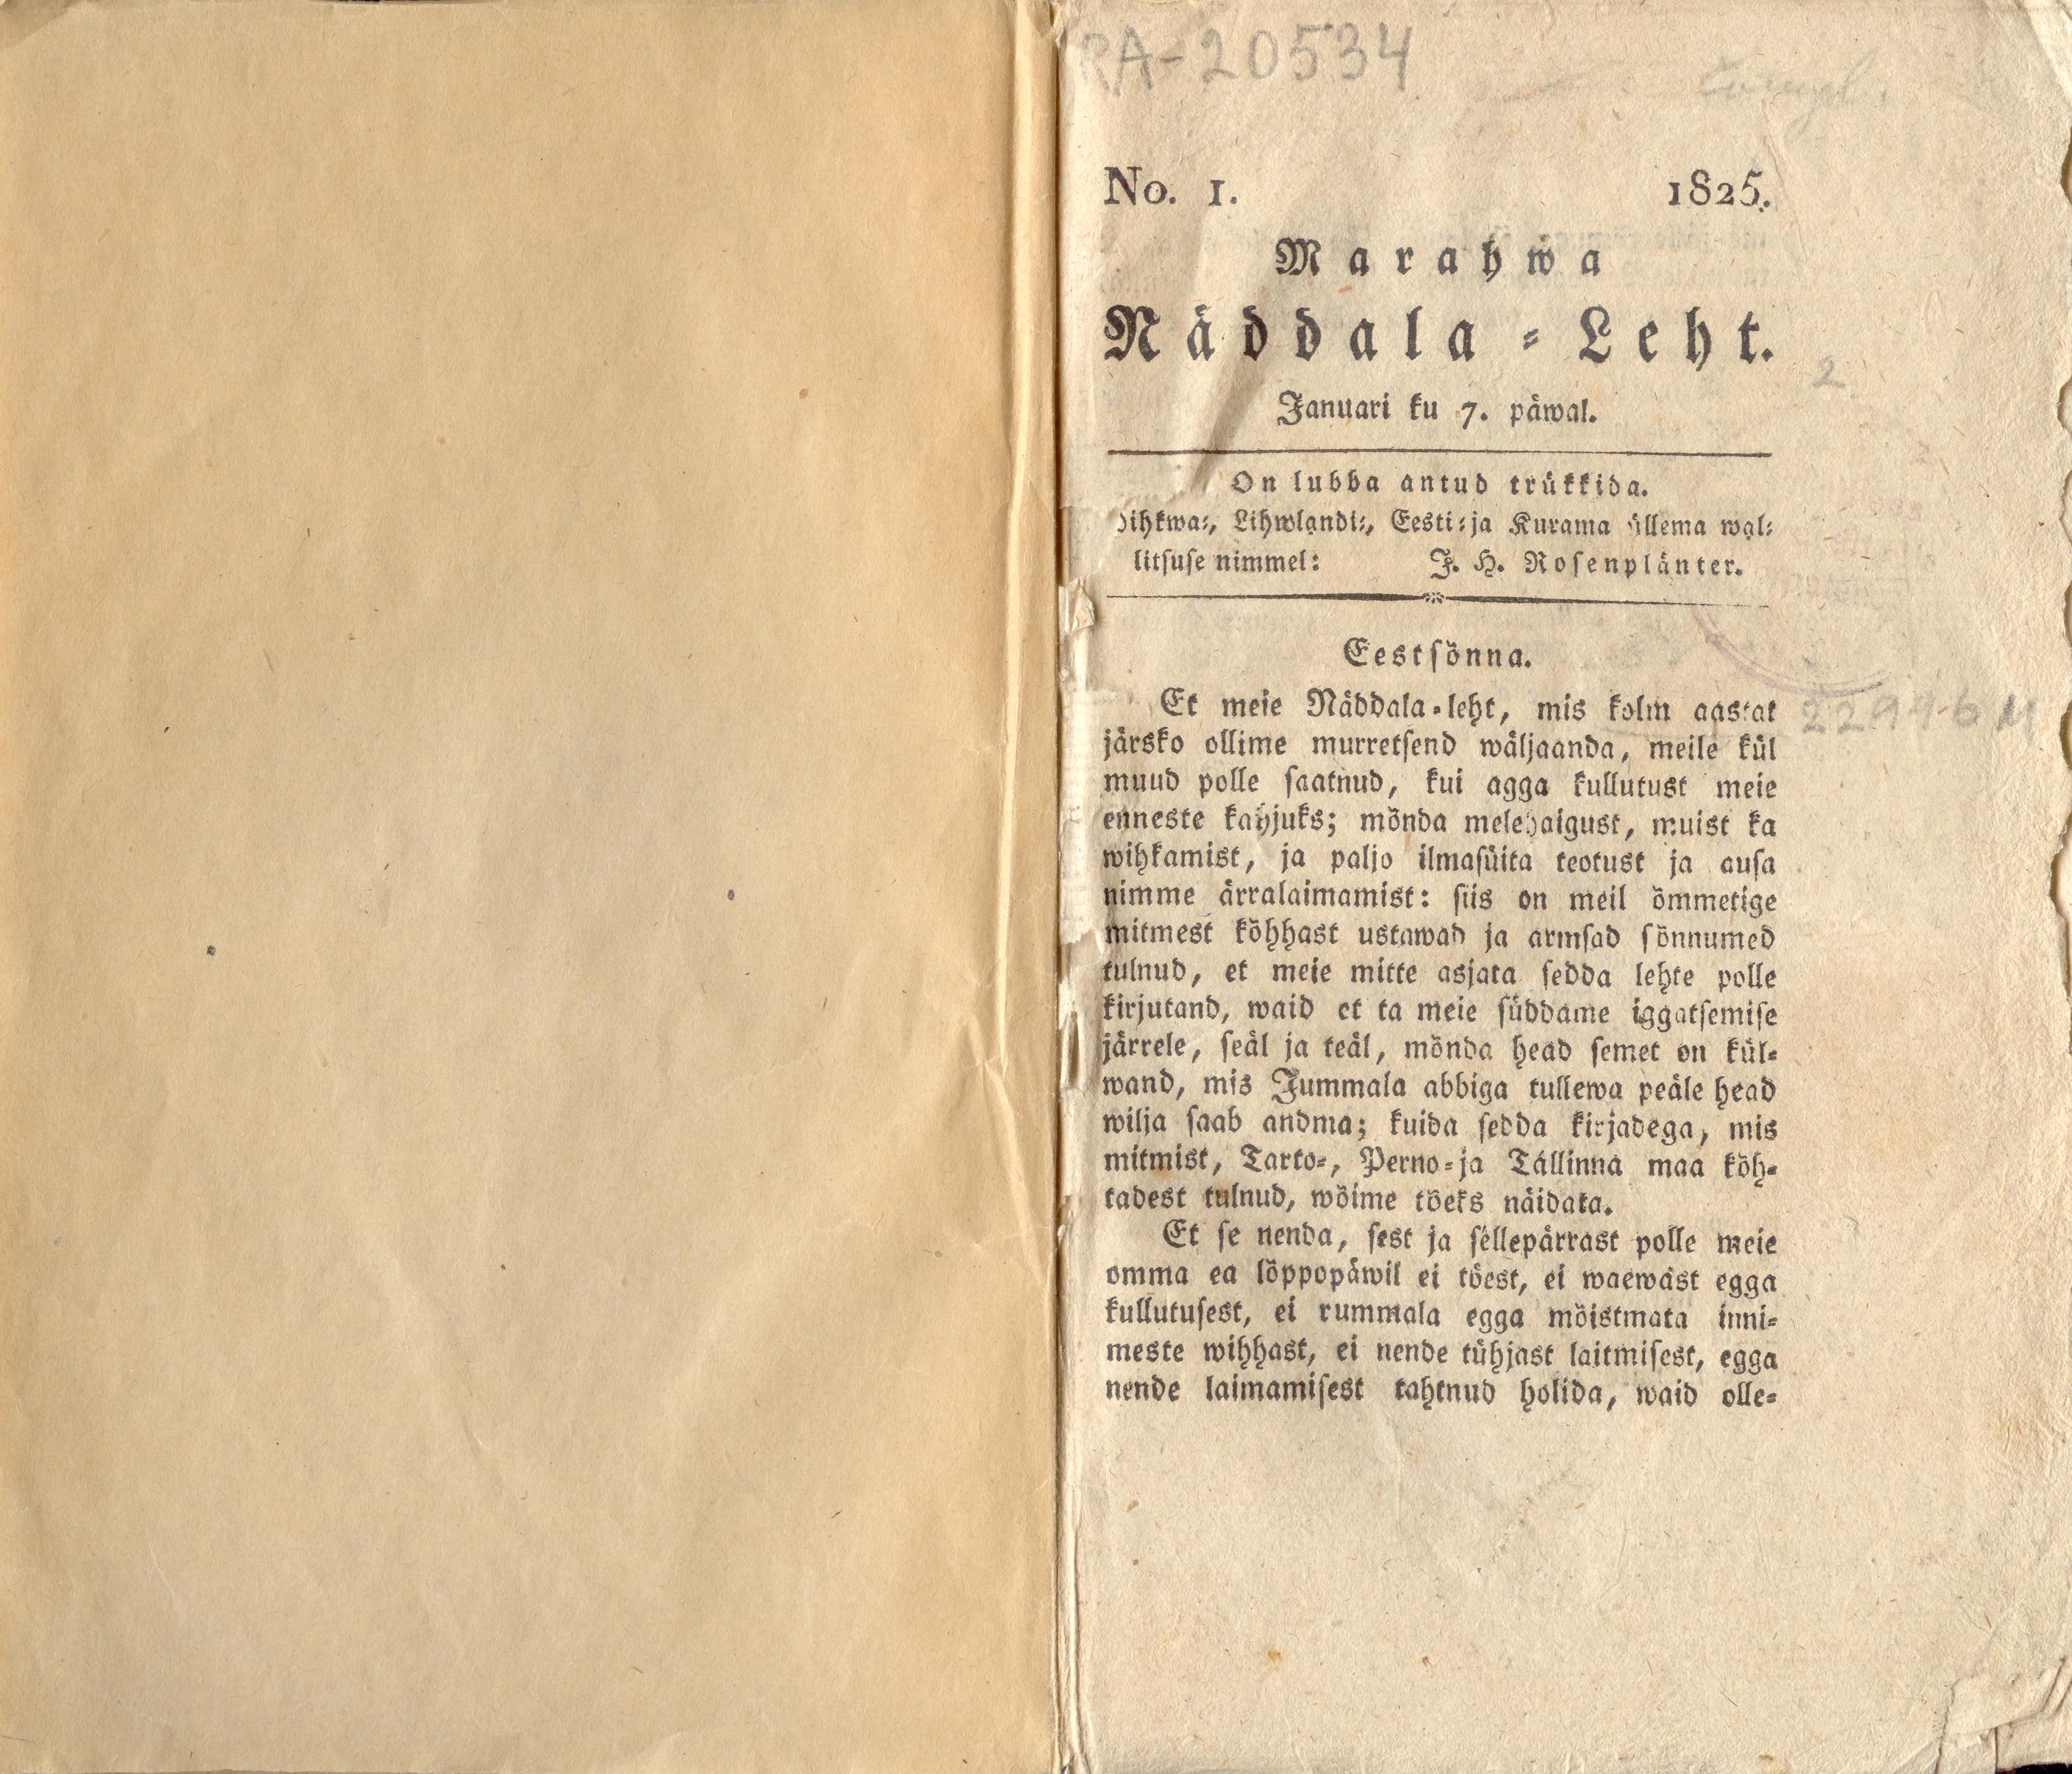 Marahwa Näddala-Leht [4] (1825) | 1. (1) Title page